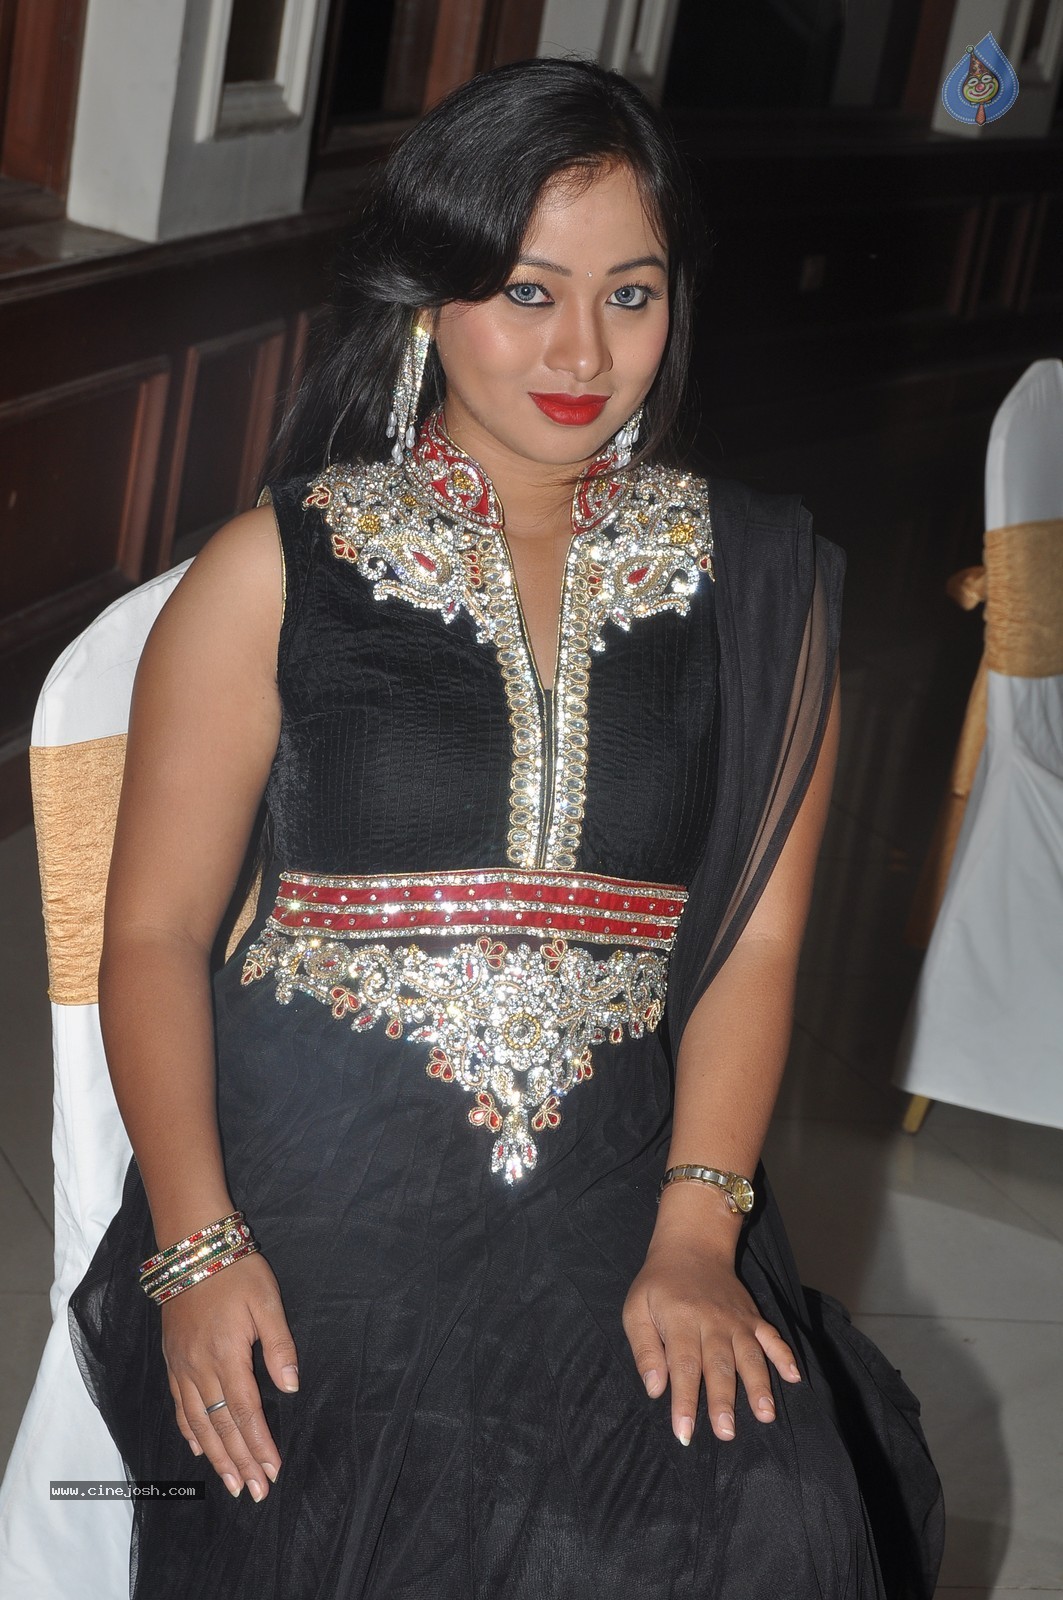 Actress Sneha Photos - 4 / 62 photos